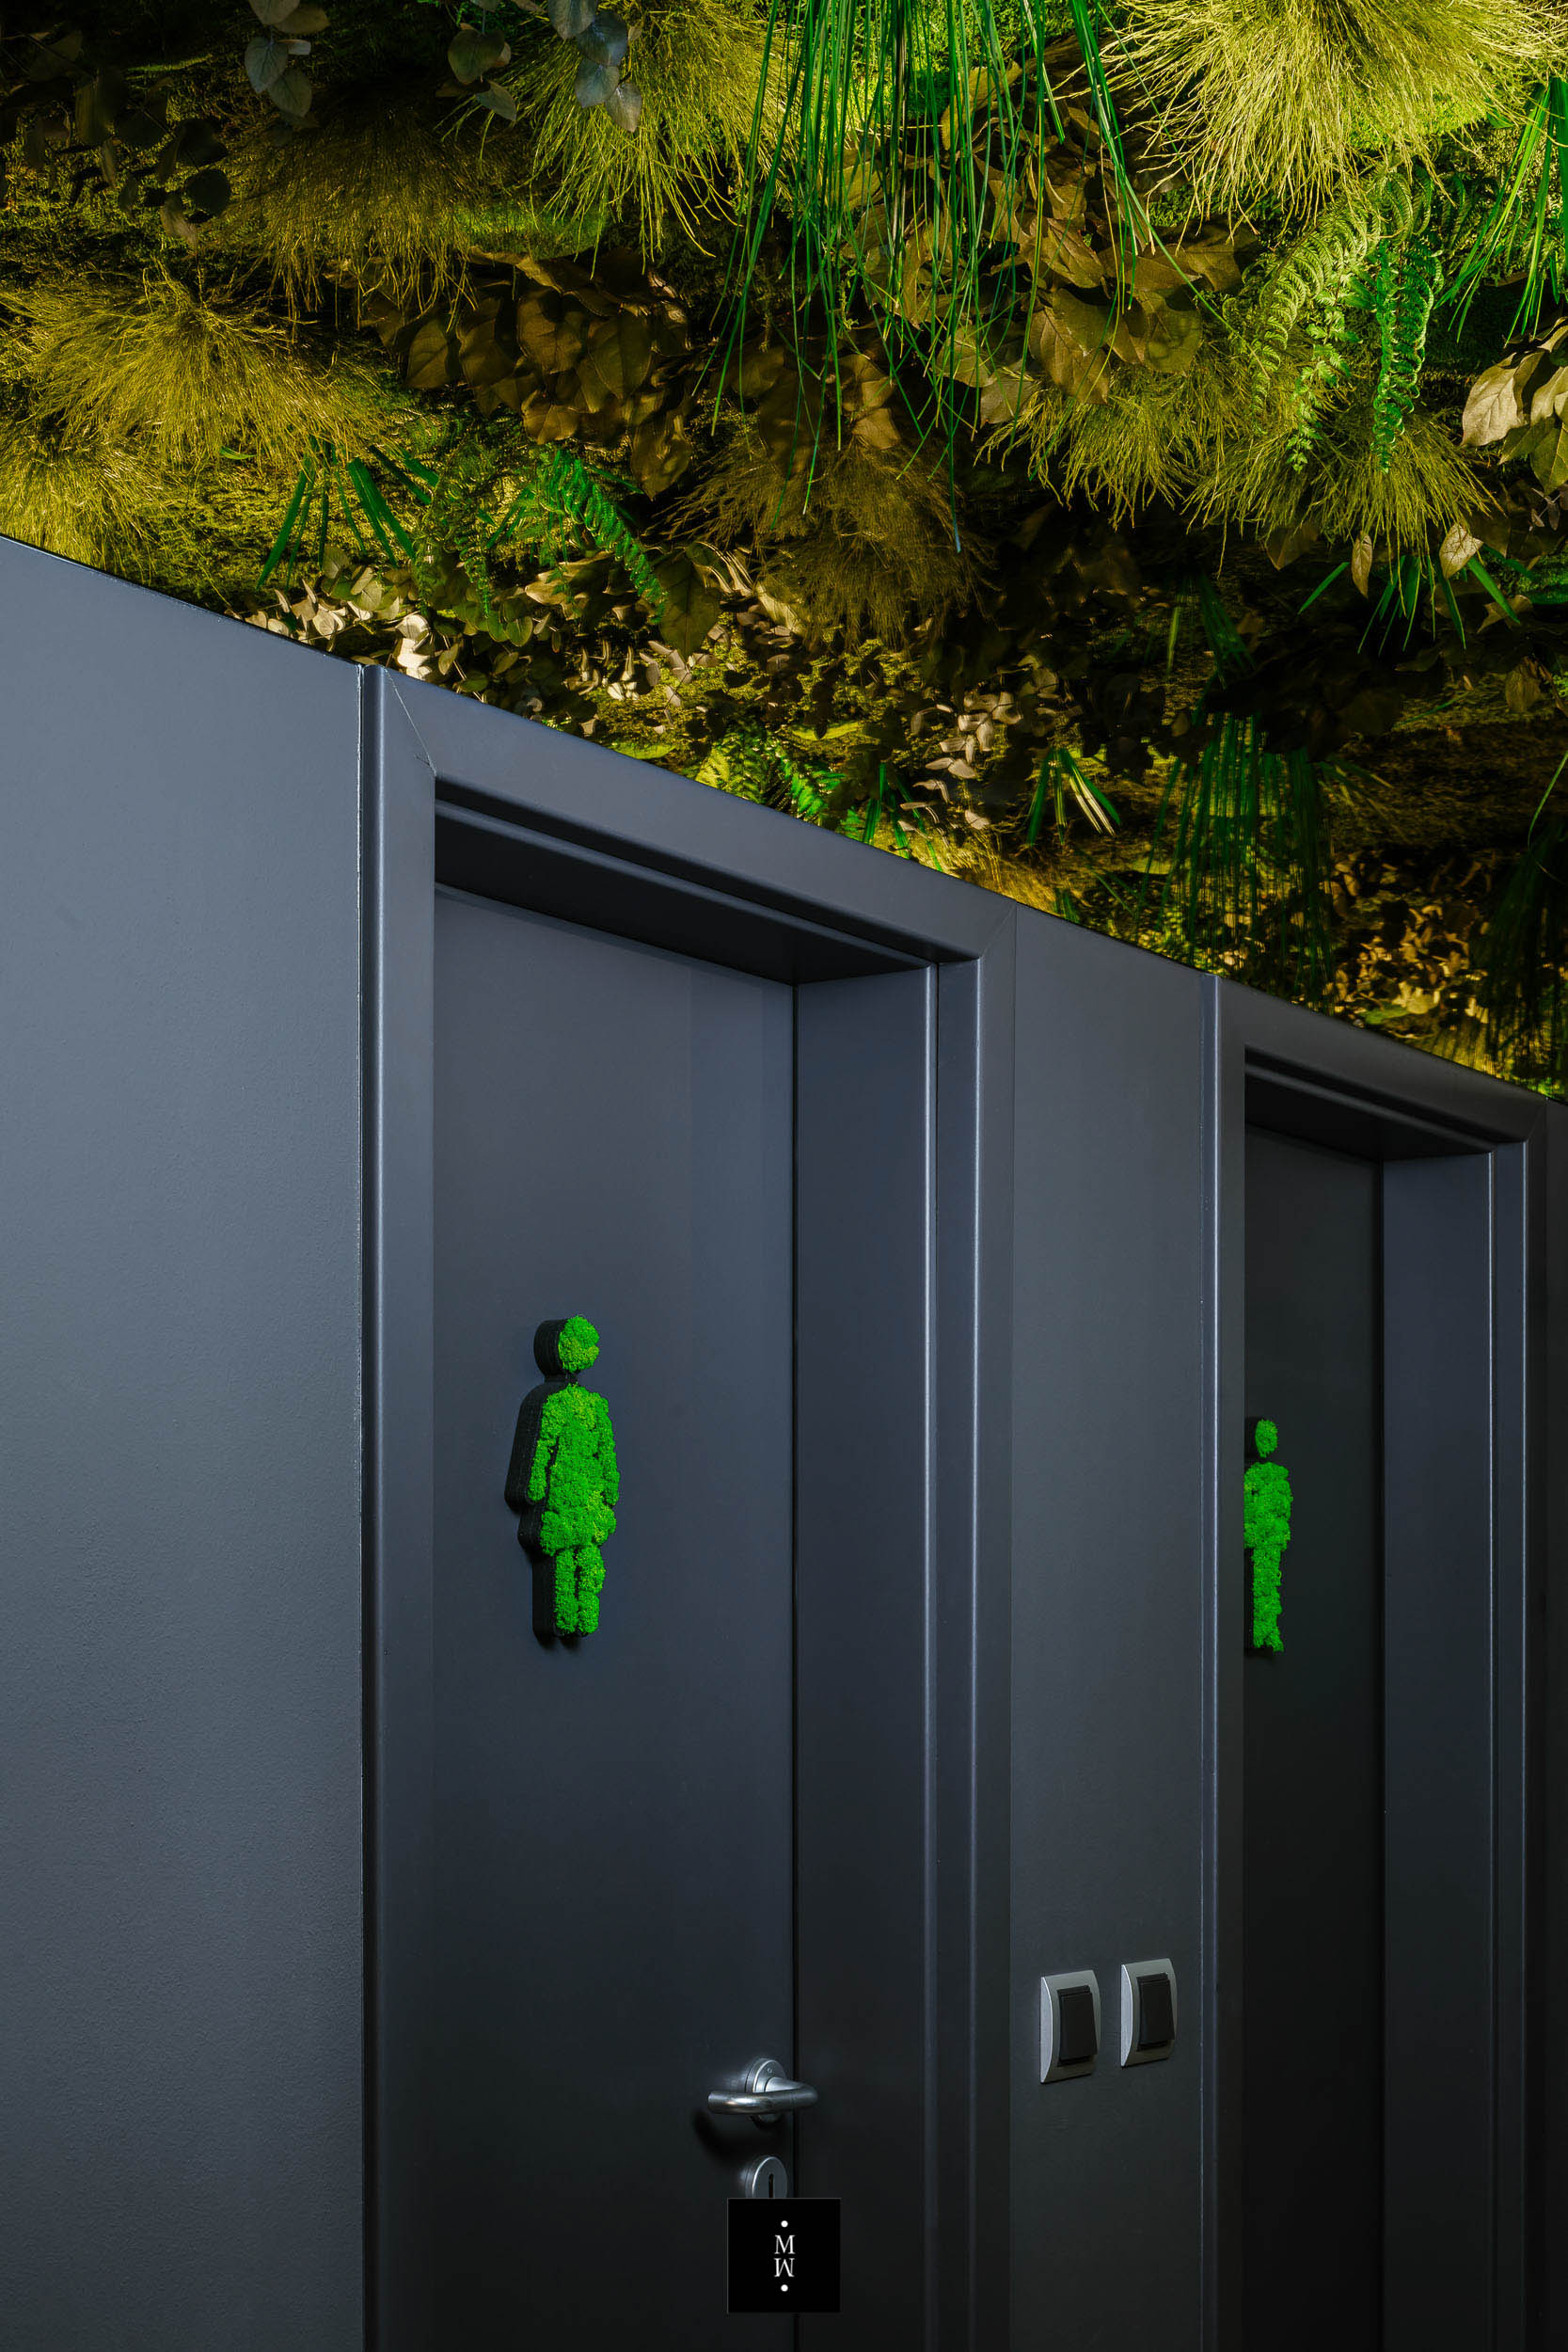 Dschungelmoosdecke in einem Toilettendurchgang mit Moosfiguren für die Toilettentüren  